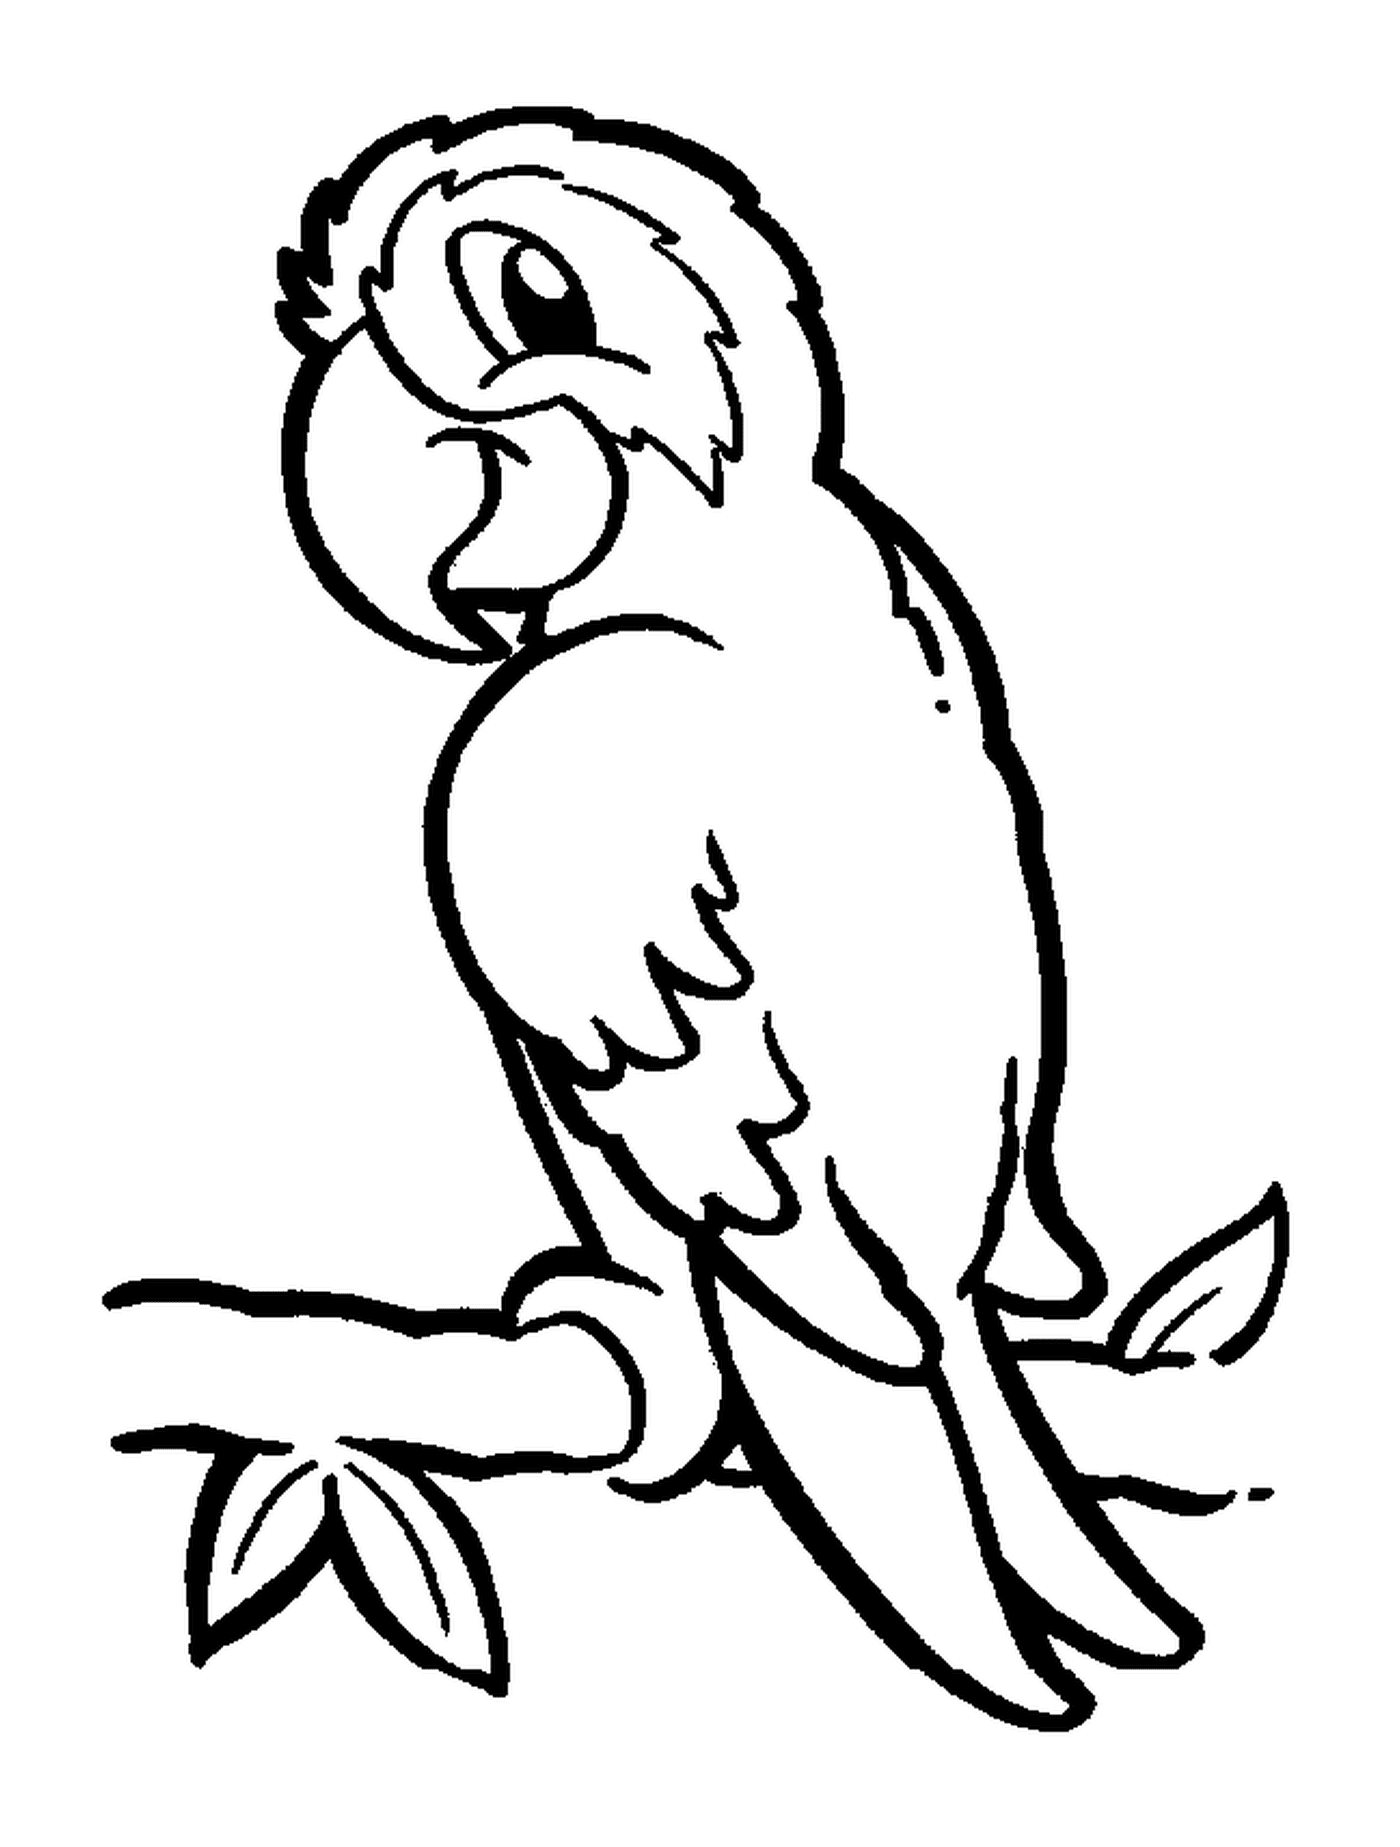  Parrot, pássaro exótico com plumagem colorida 